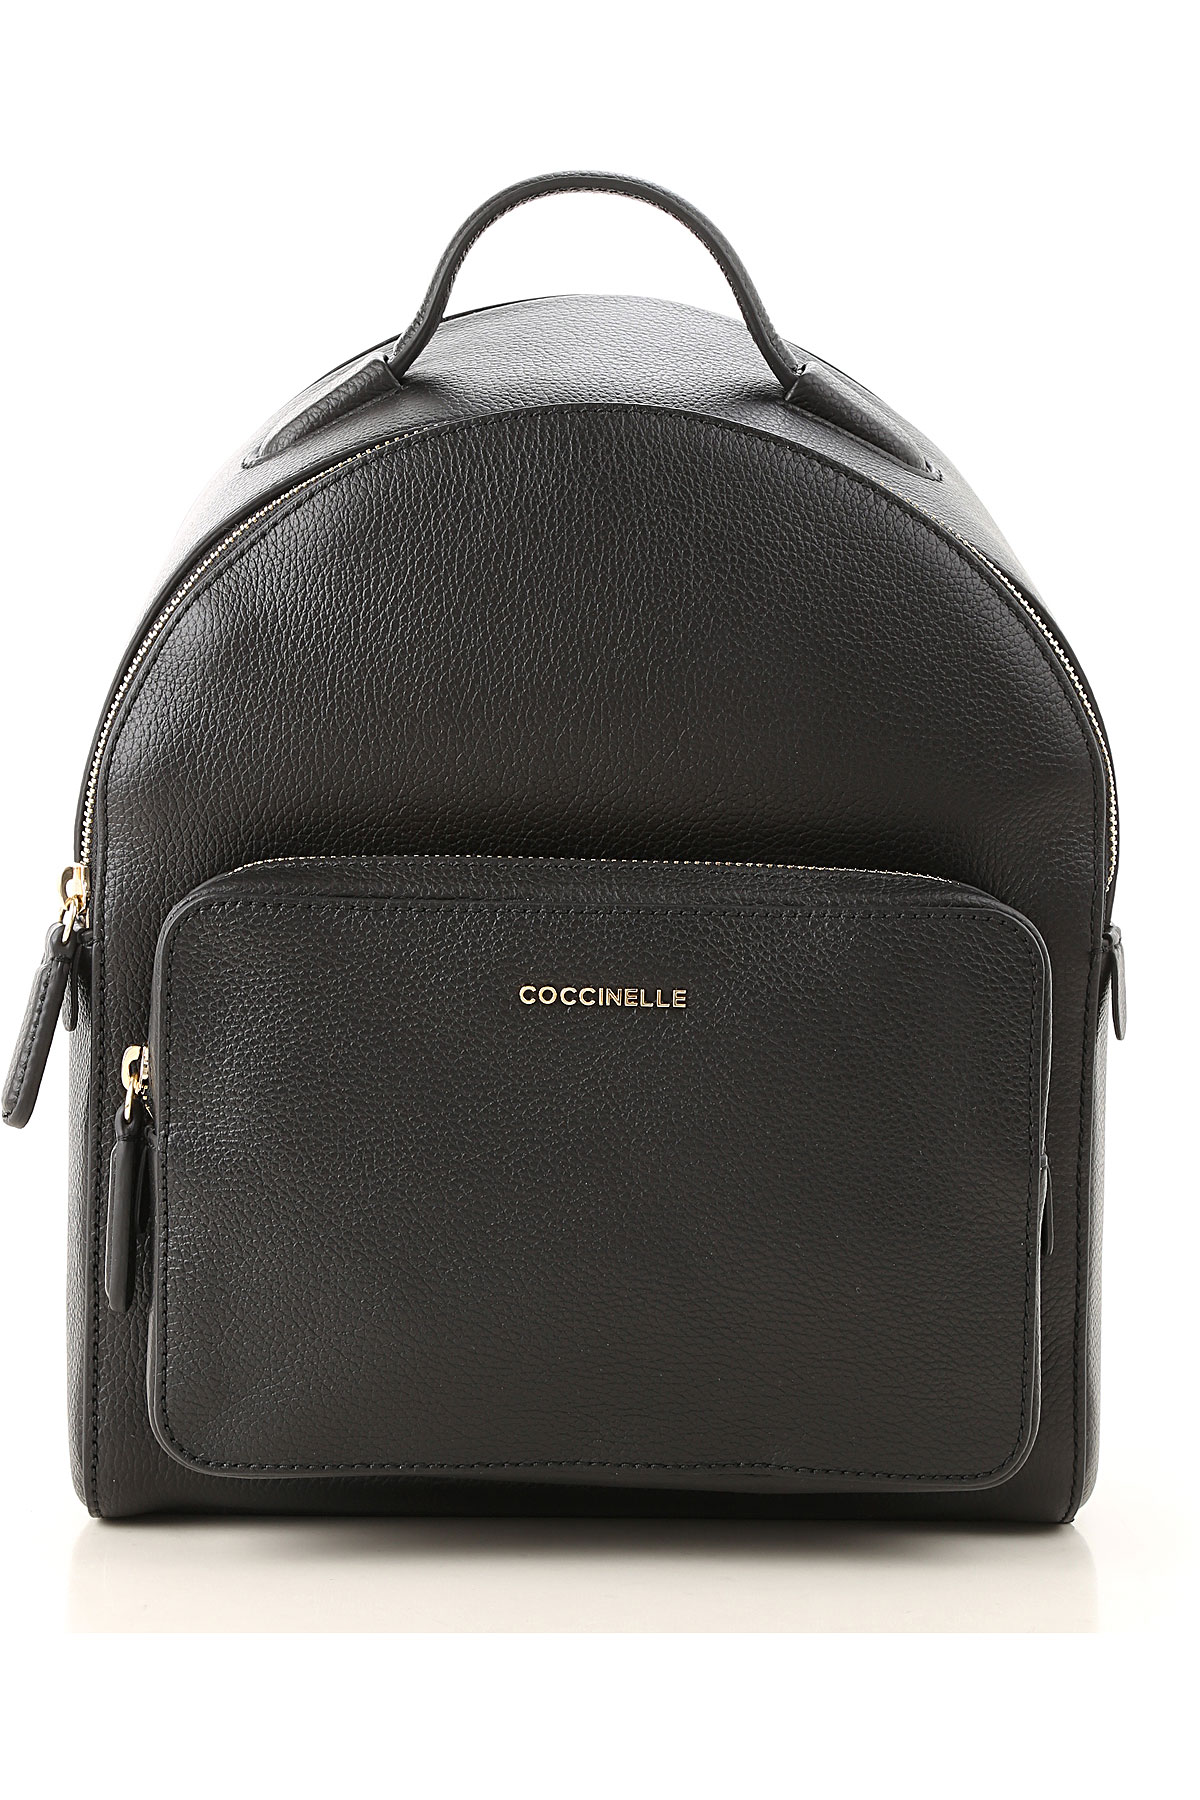 Handbags Coccinelle, Style code: e1cf8140101-001-